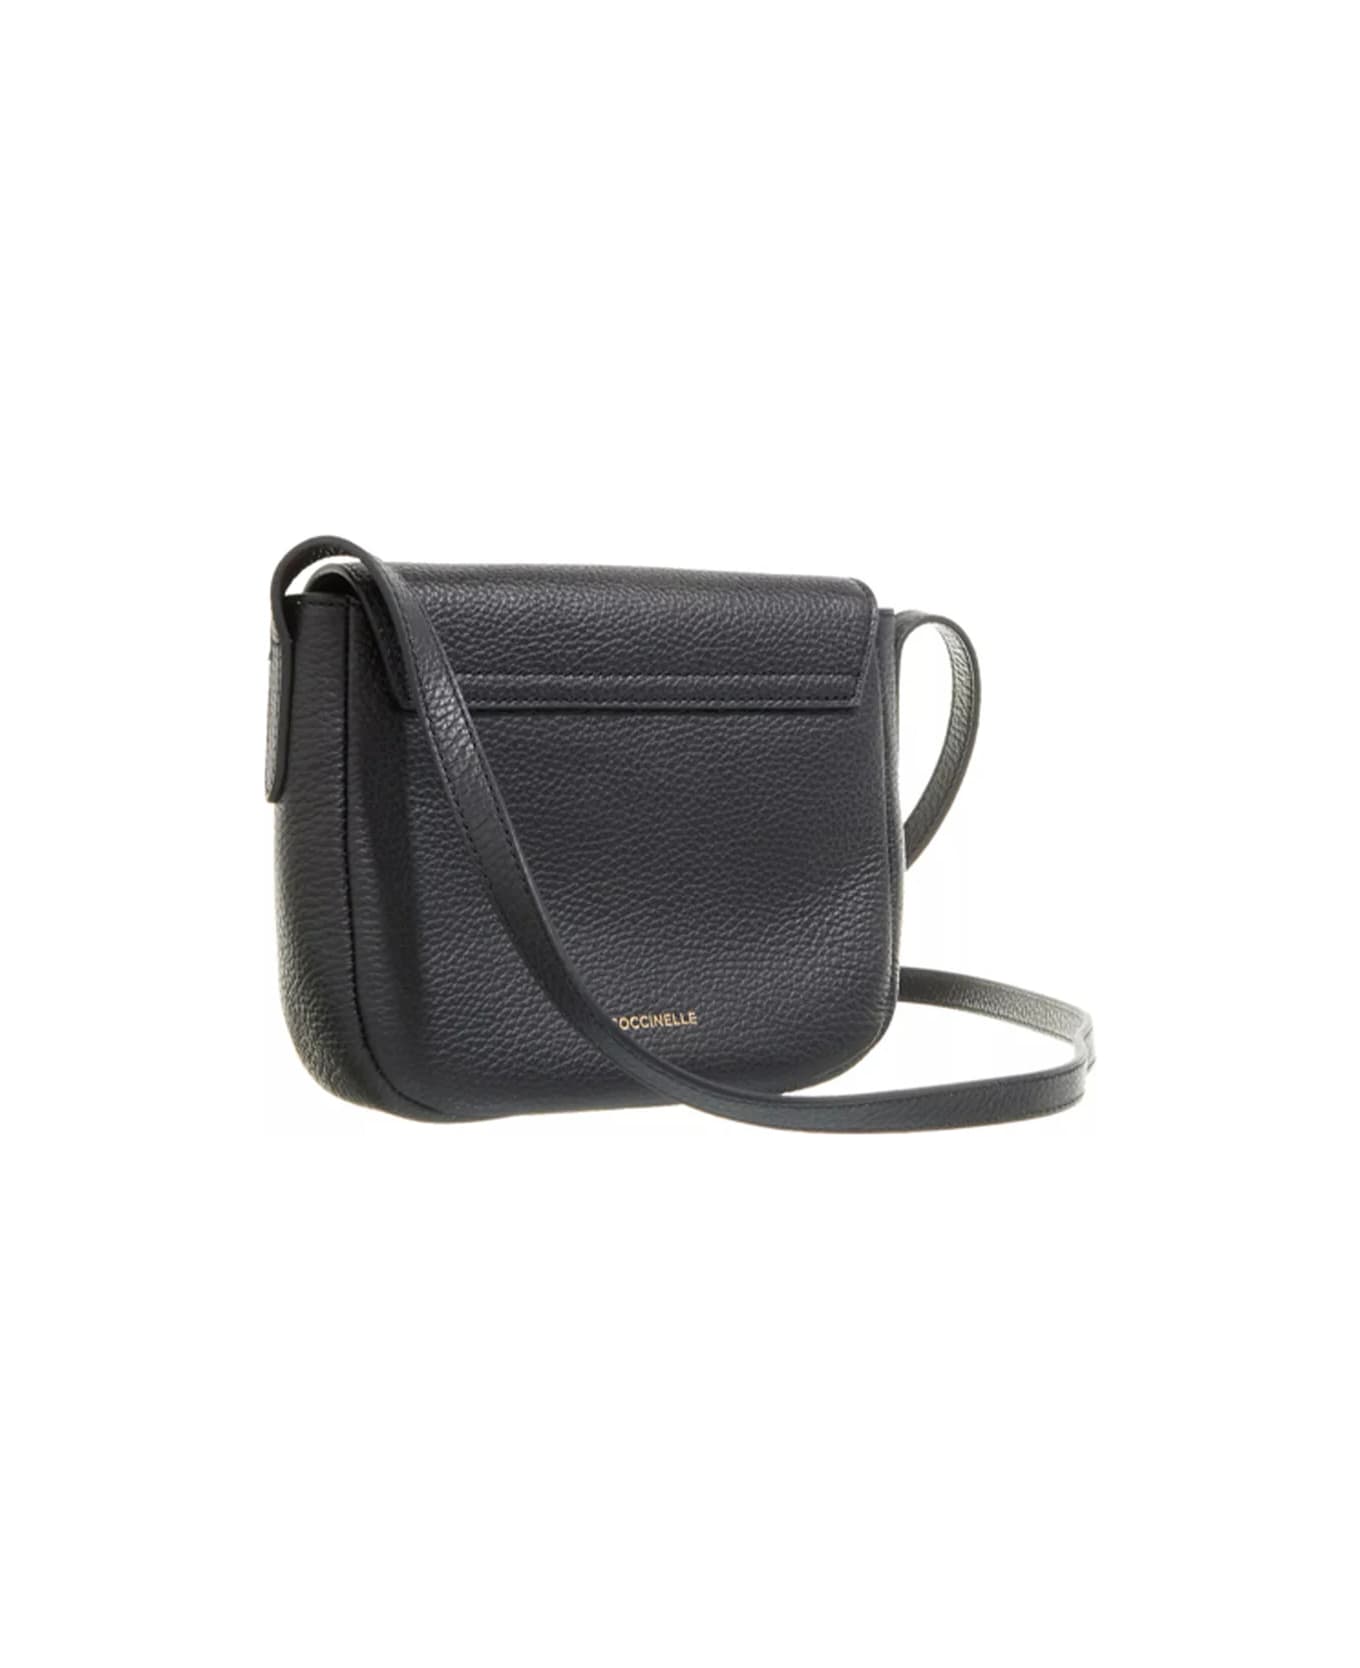 Coccinelle Arlettis Bag With Shoulder Strap - Noir トートバッグ